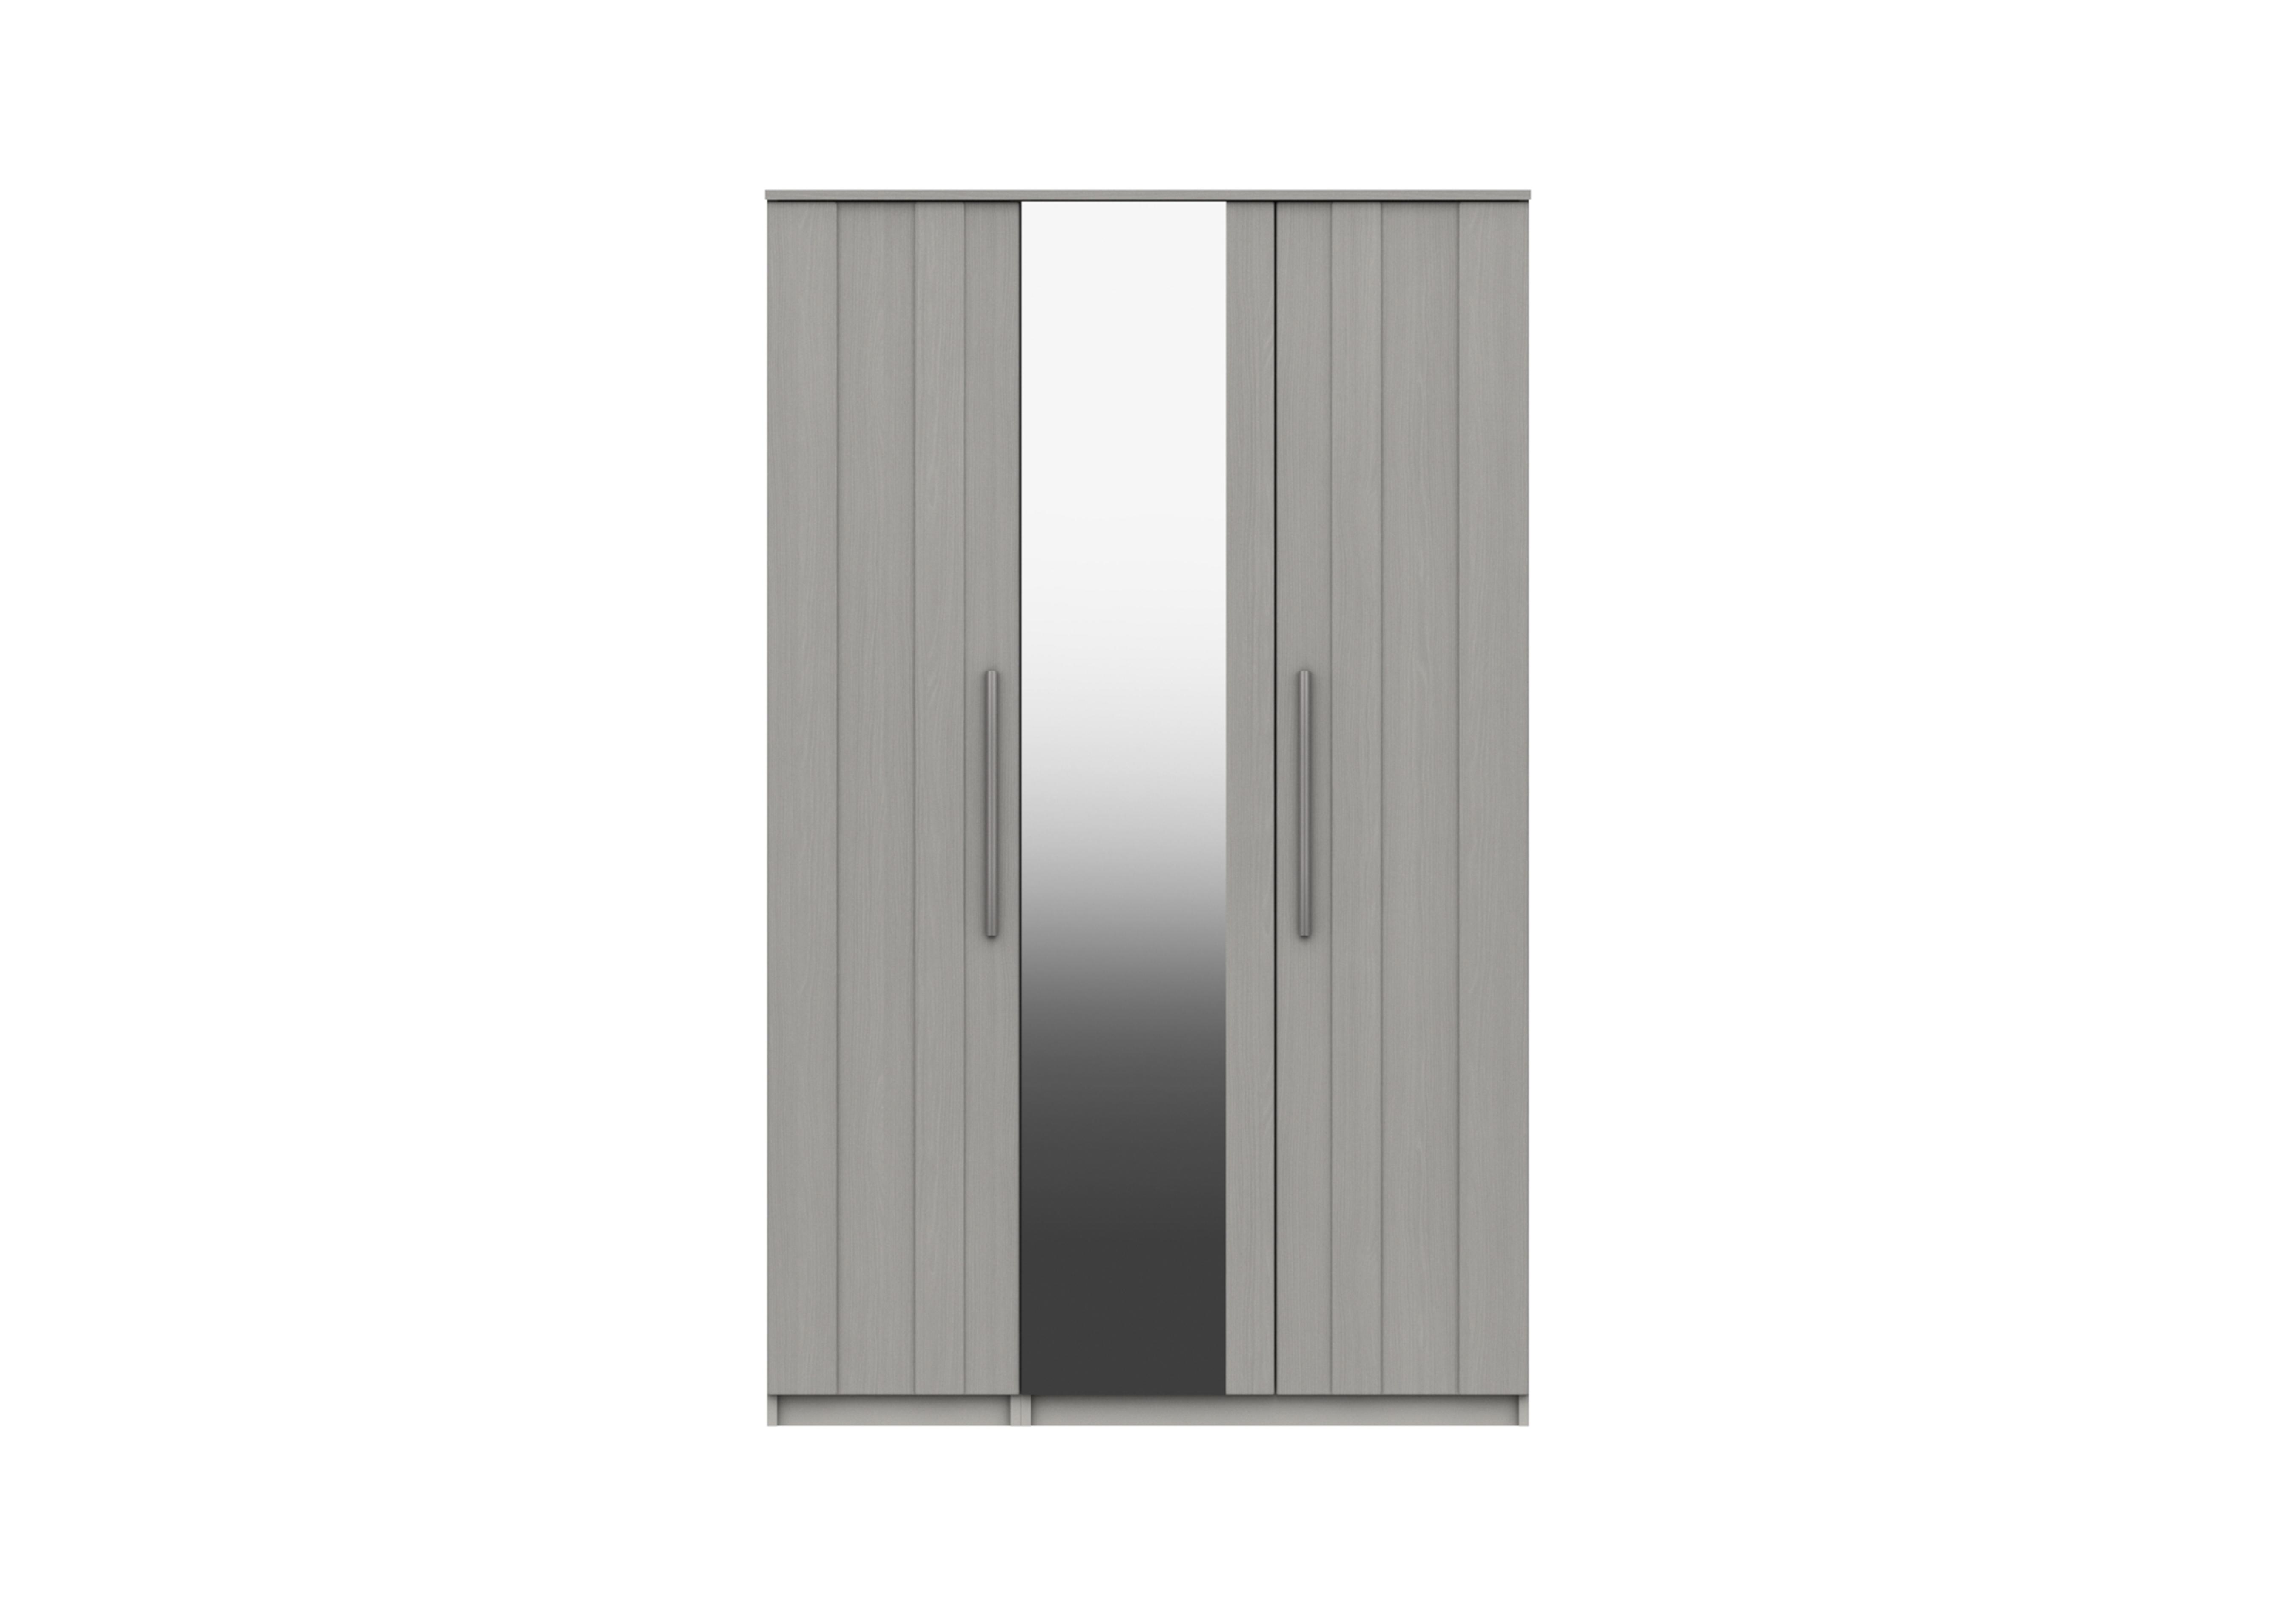 Victoria 3 Door Wardrobe with Mirror in Light Grey on Furniture Village